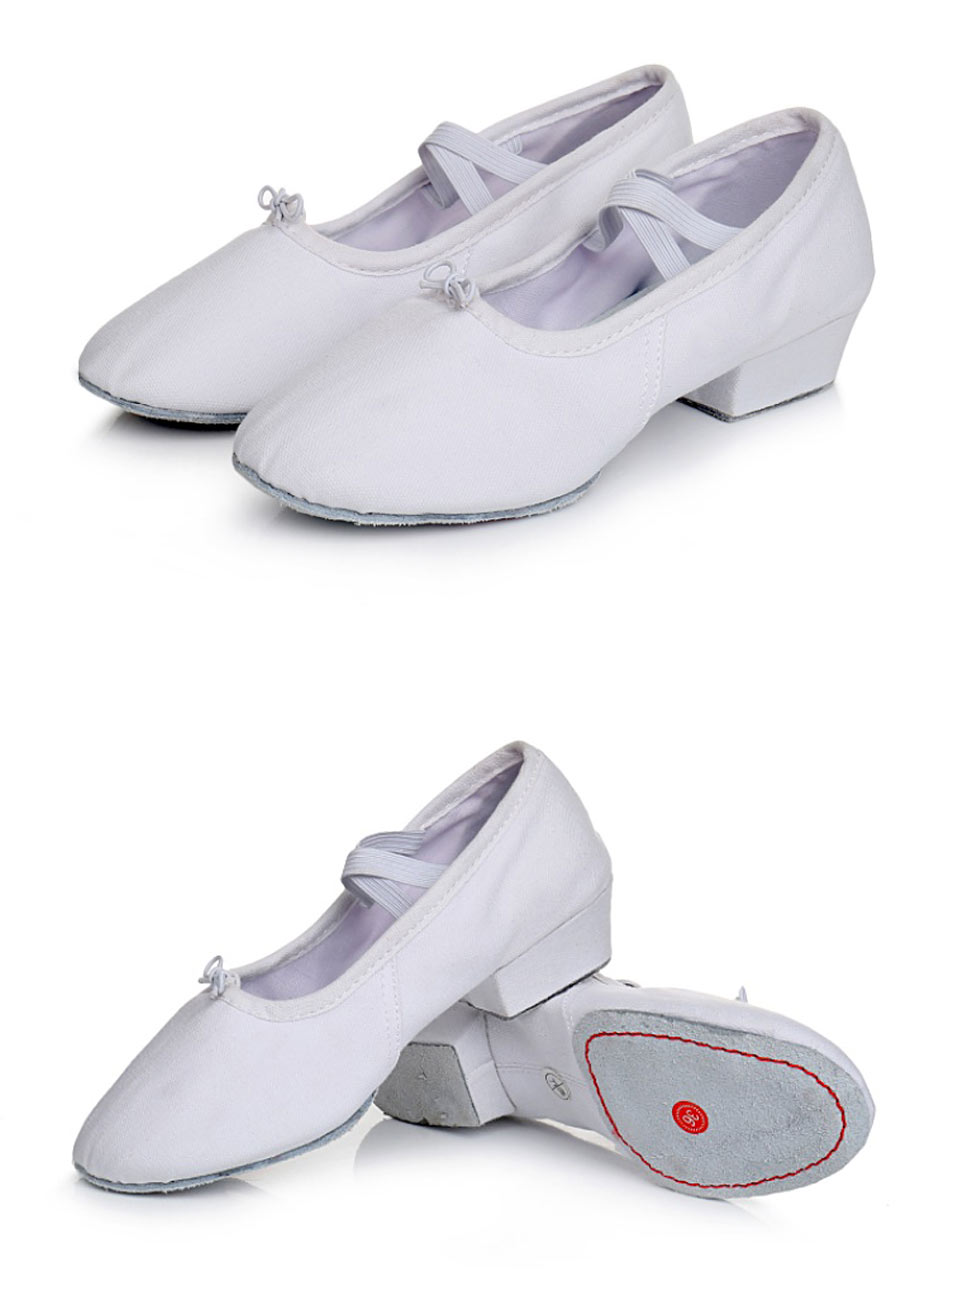 come4buy.com-Sepatu Dansa Wanita Sepatu Salsa Jazz Balet Anak Perempuan